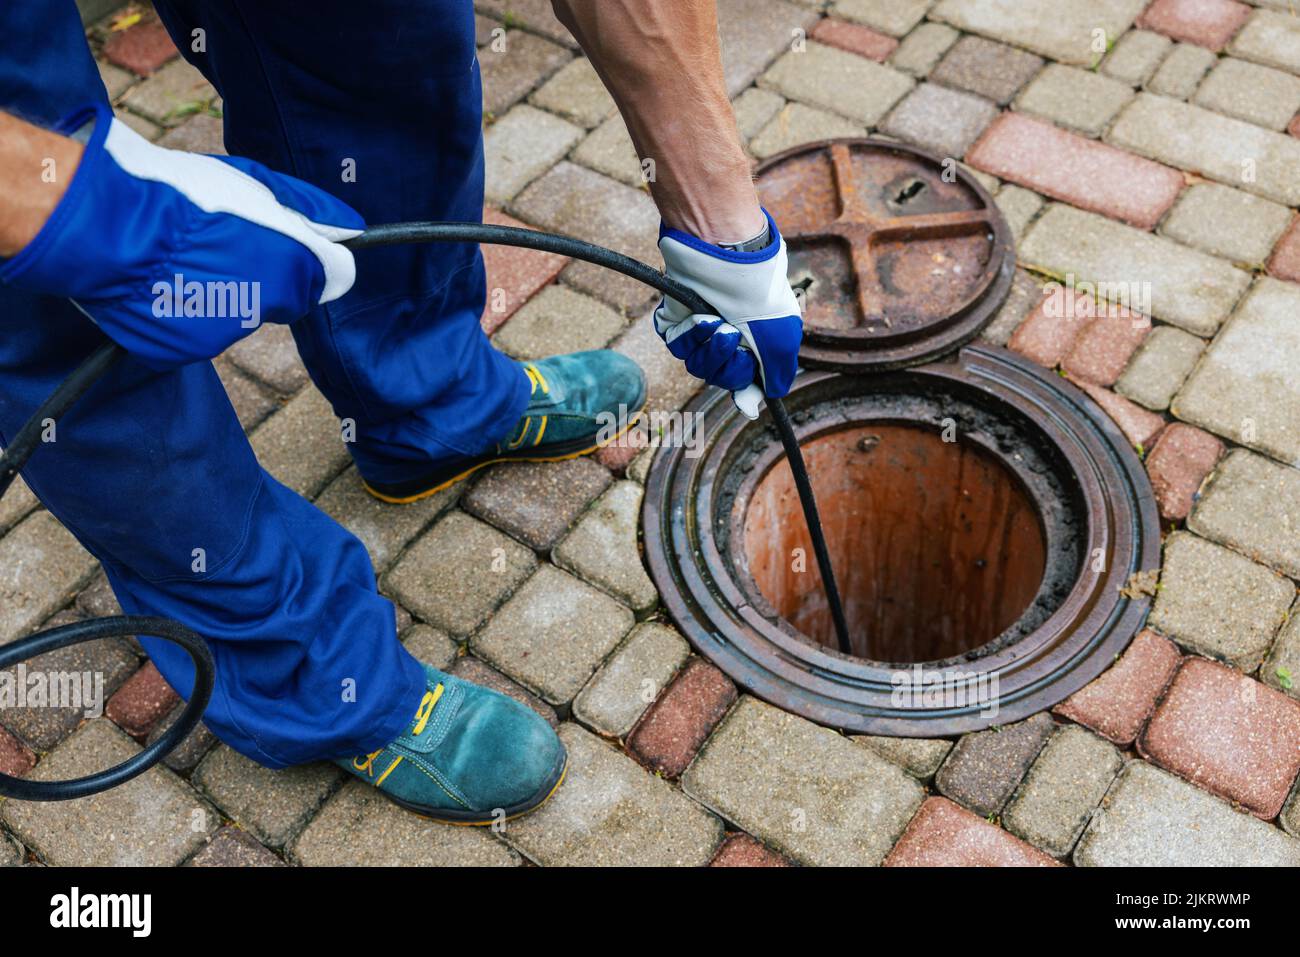 service de nettoyage des égouts - l'employé nettoie une évacuation obstruée à l'aide d'un jet hydro Banque D'Images